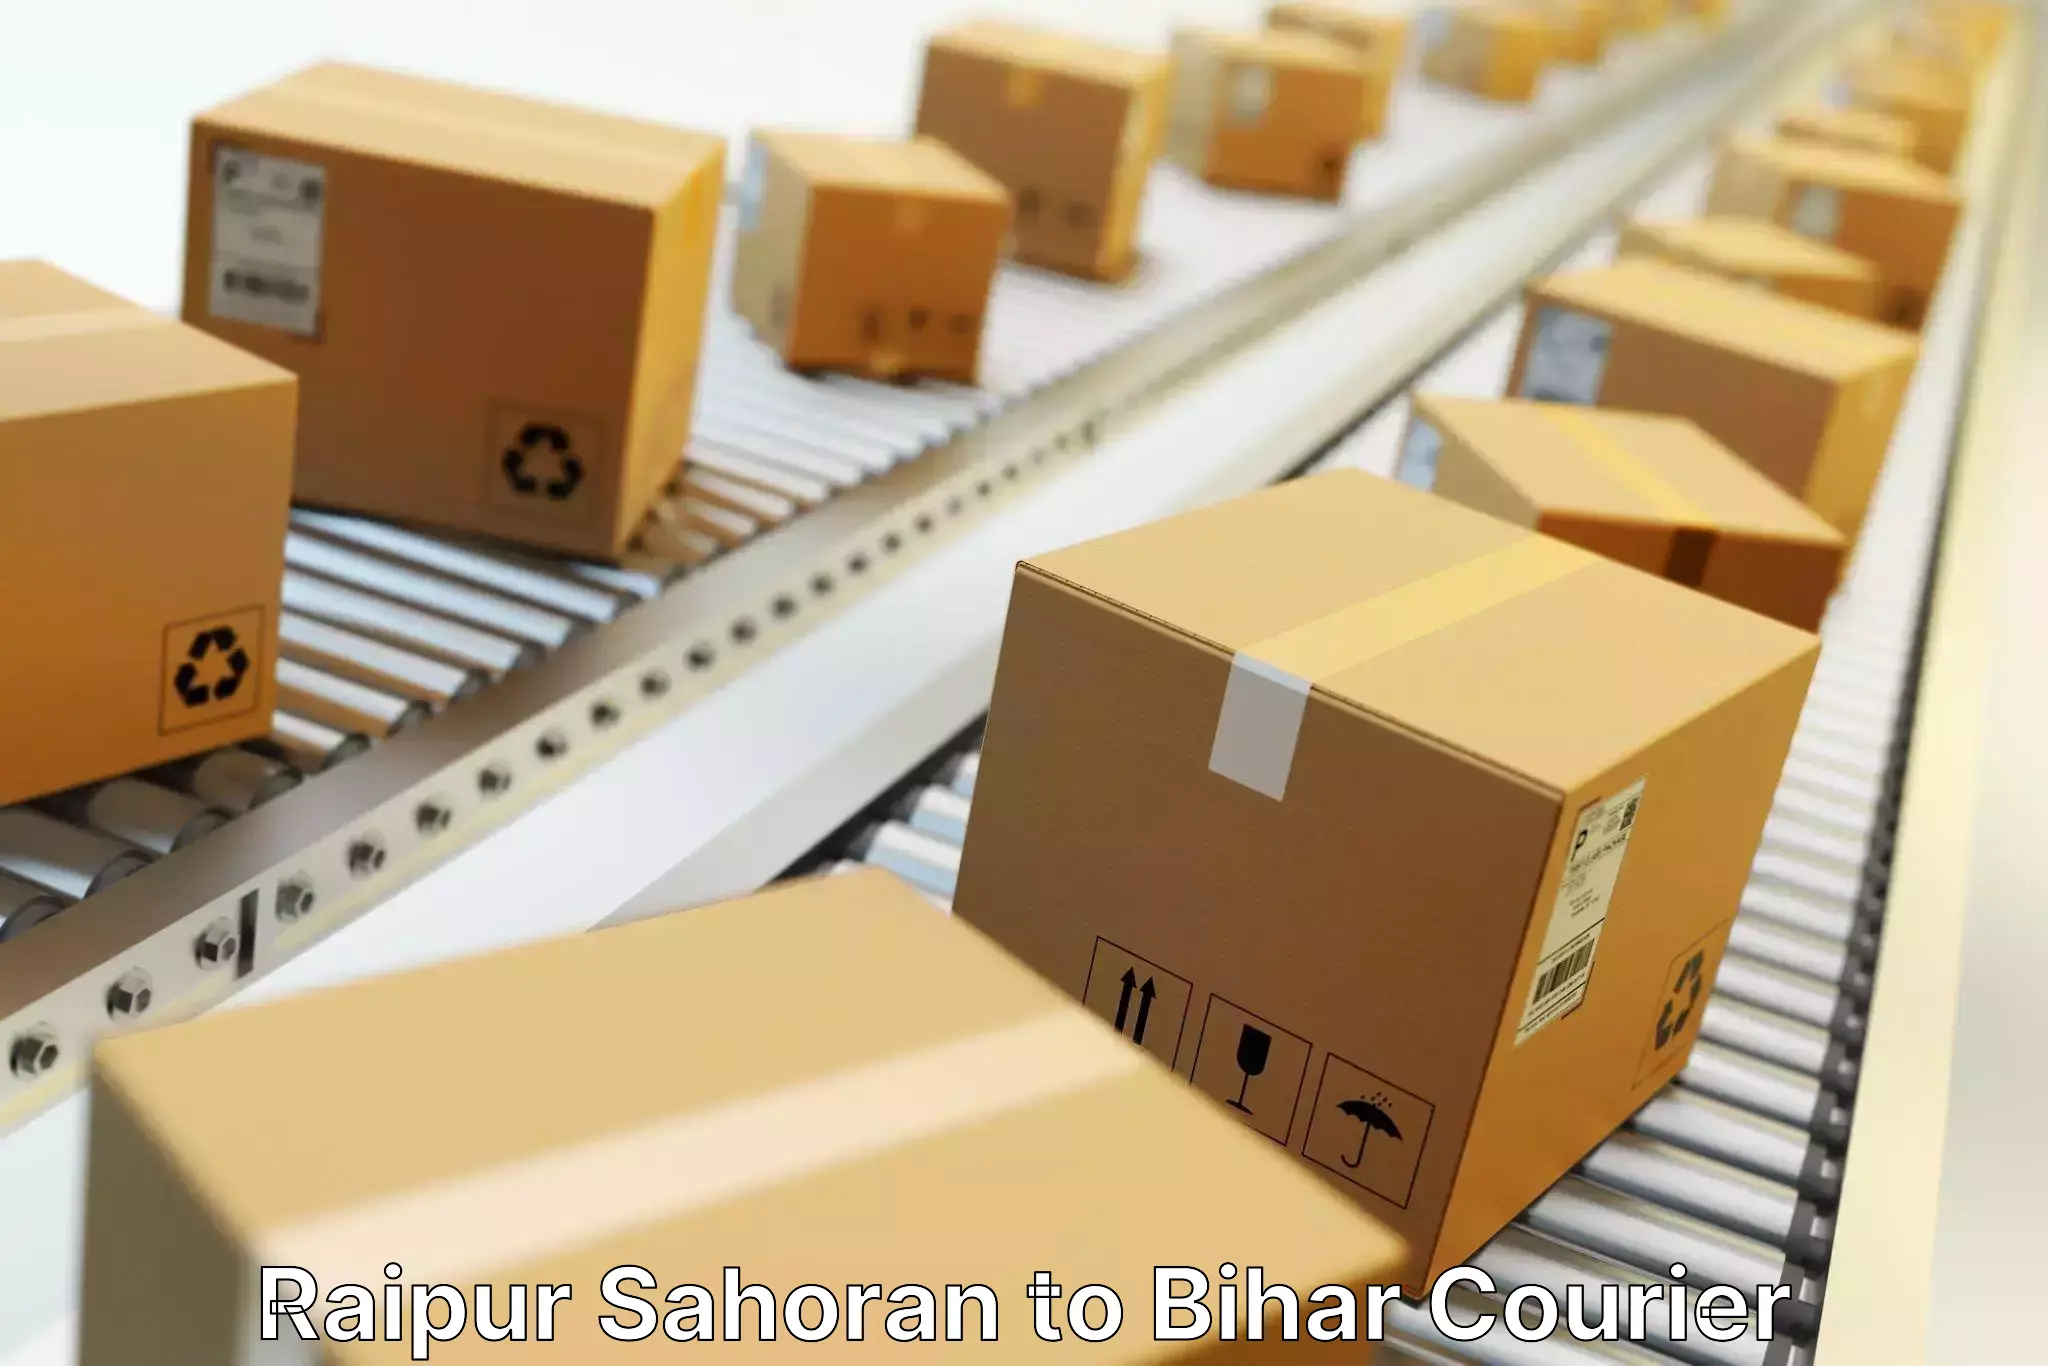 Large package courier Raipur Sahoran to Gaya